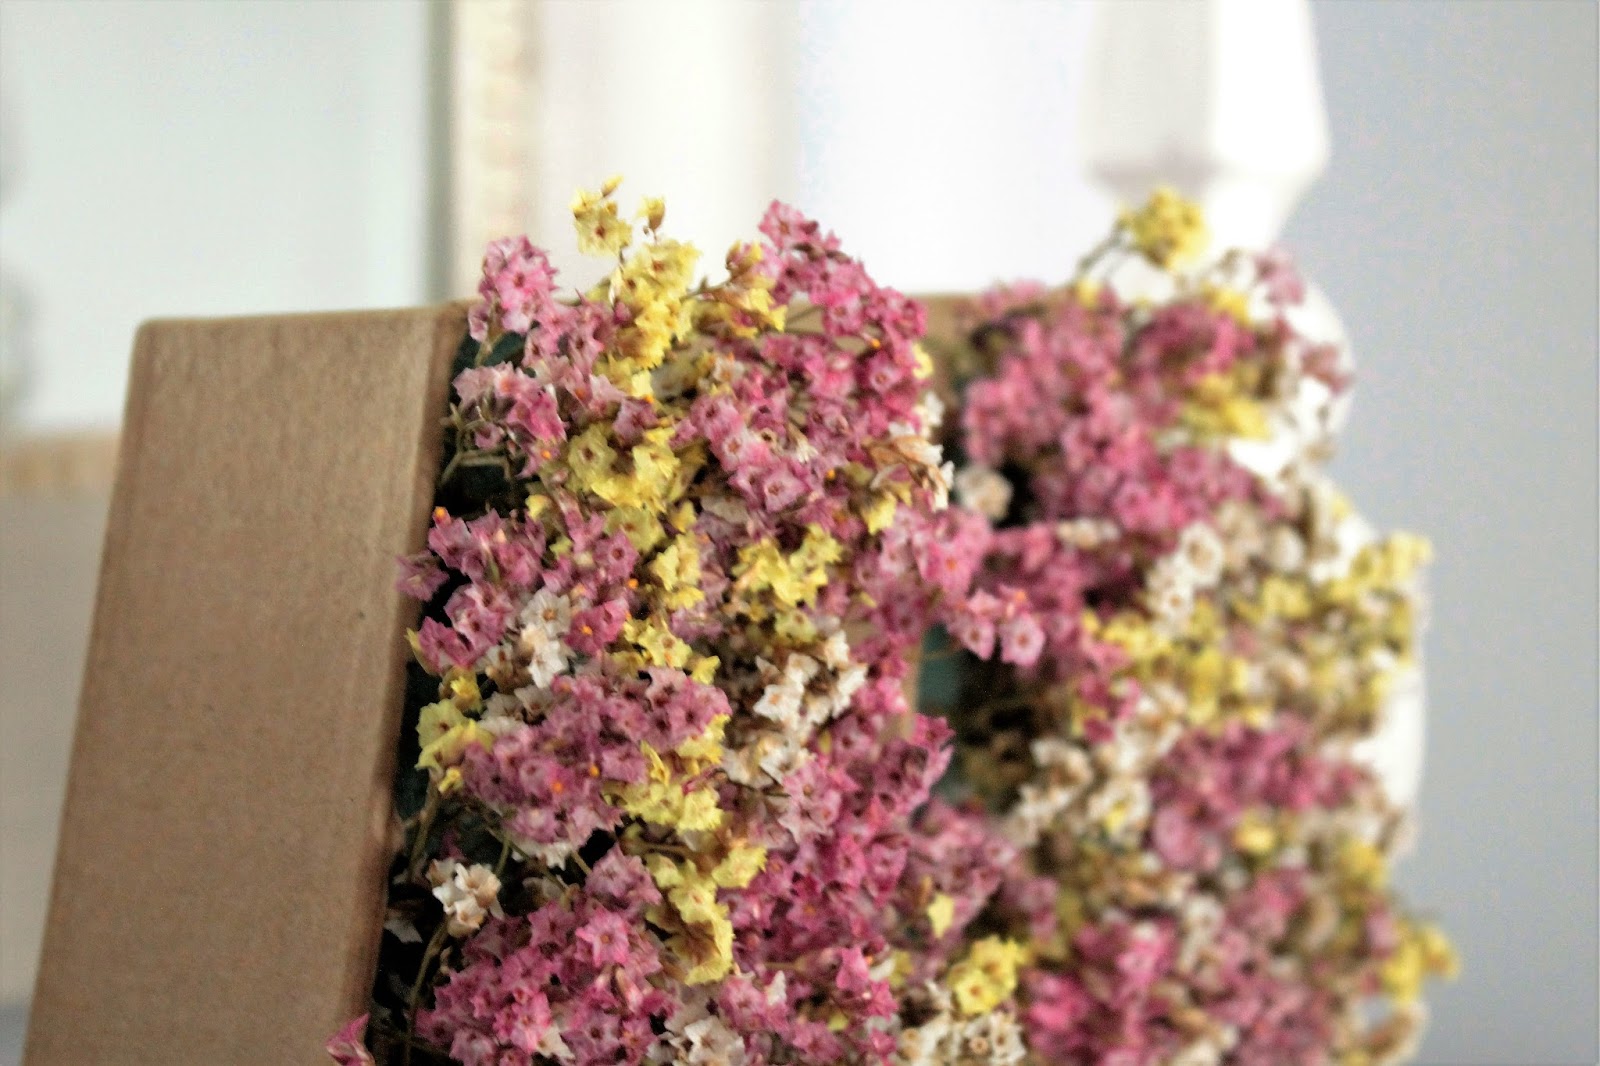 Letras craft flores naturales DIY – La chimenea de las hadas